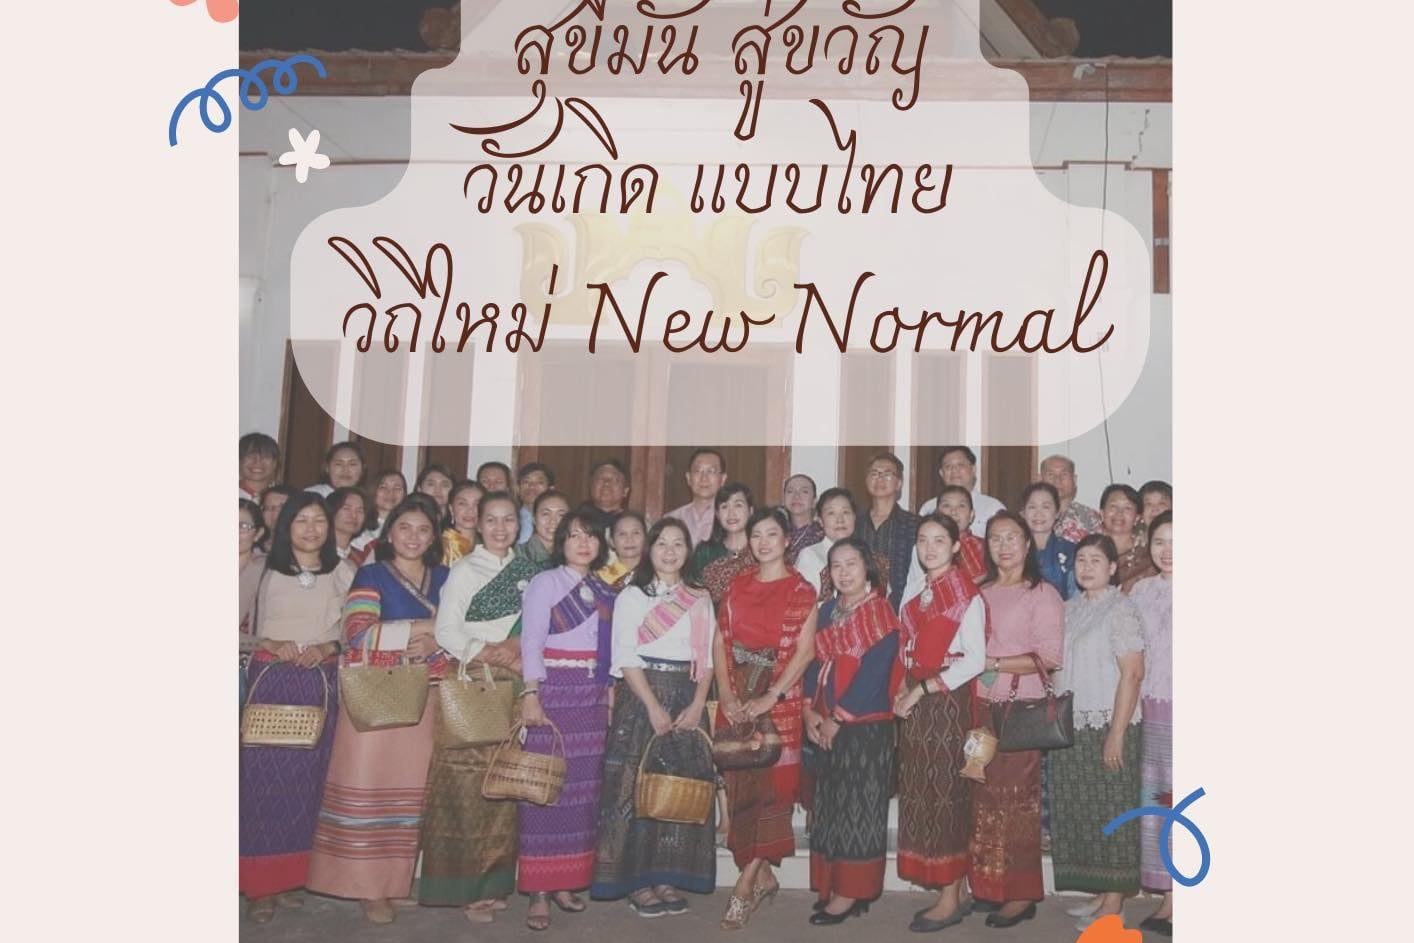 บทความ "สุขีมั่น สู่ขวัญวันเกิดแบบไทย วิถีใหม่ New Normal"